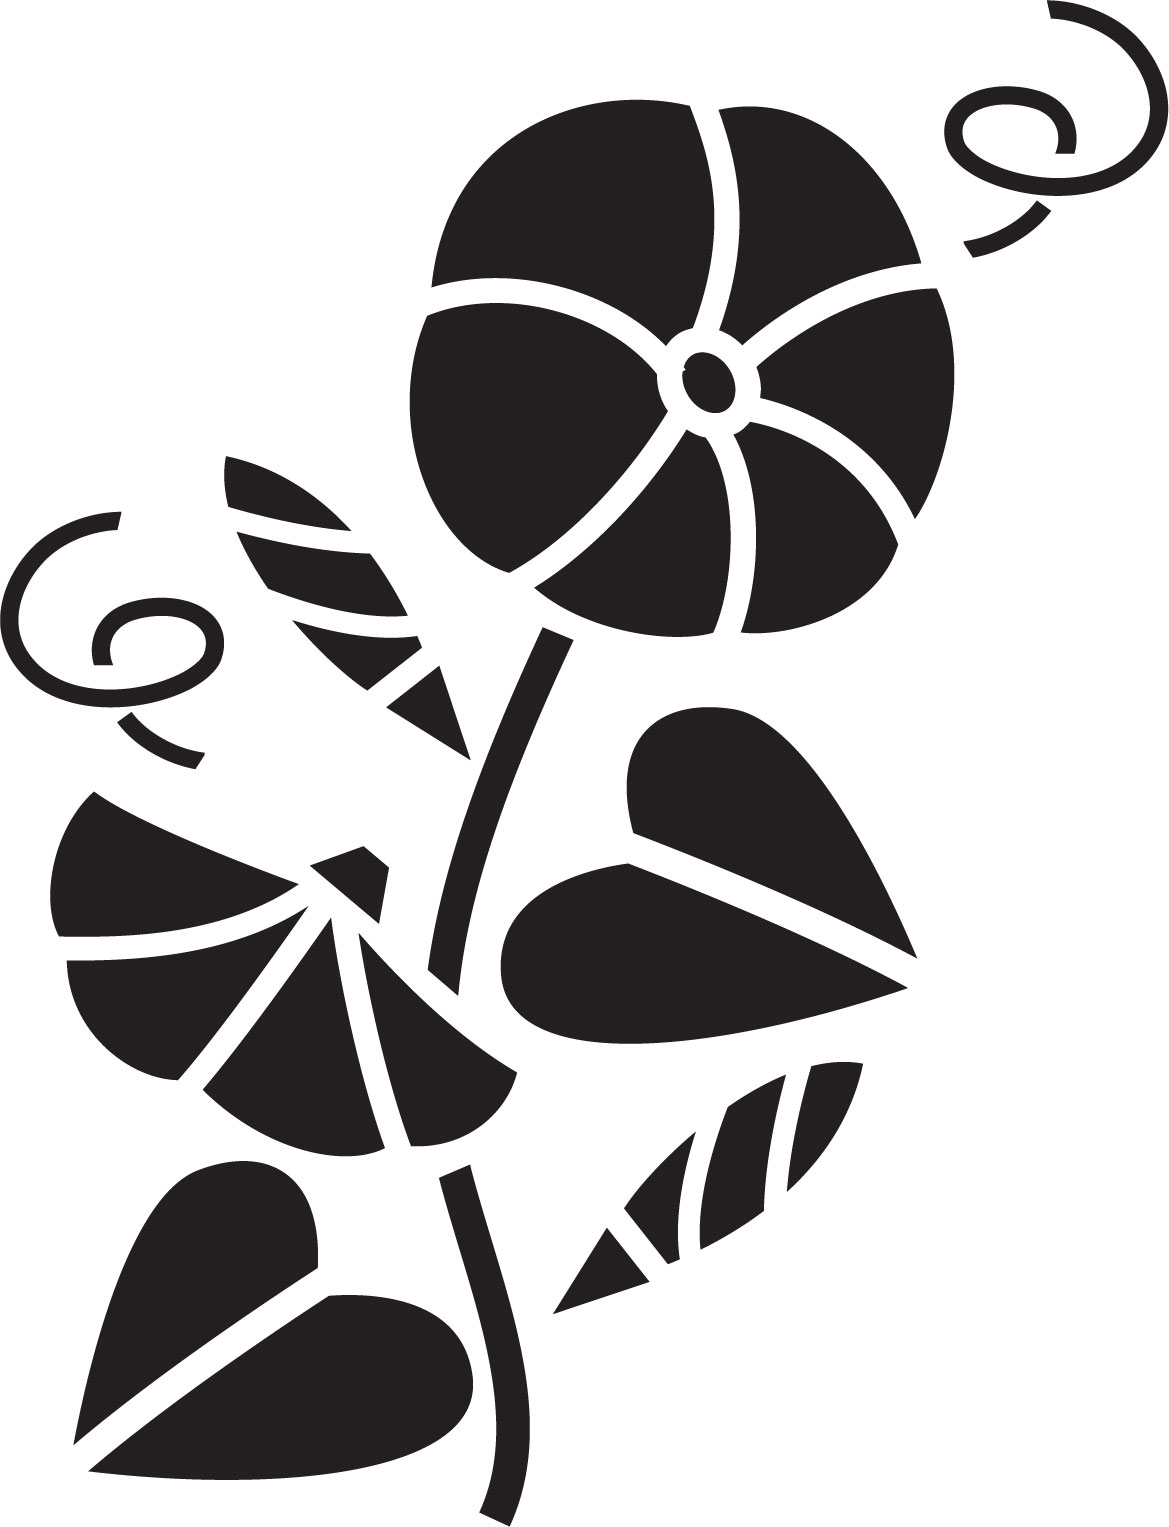 花のイラスト フリー素材 白黒 モノクロno 226 白黒 アサガオ 葉